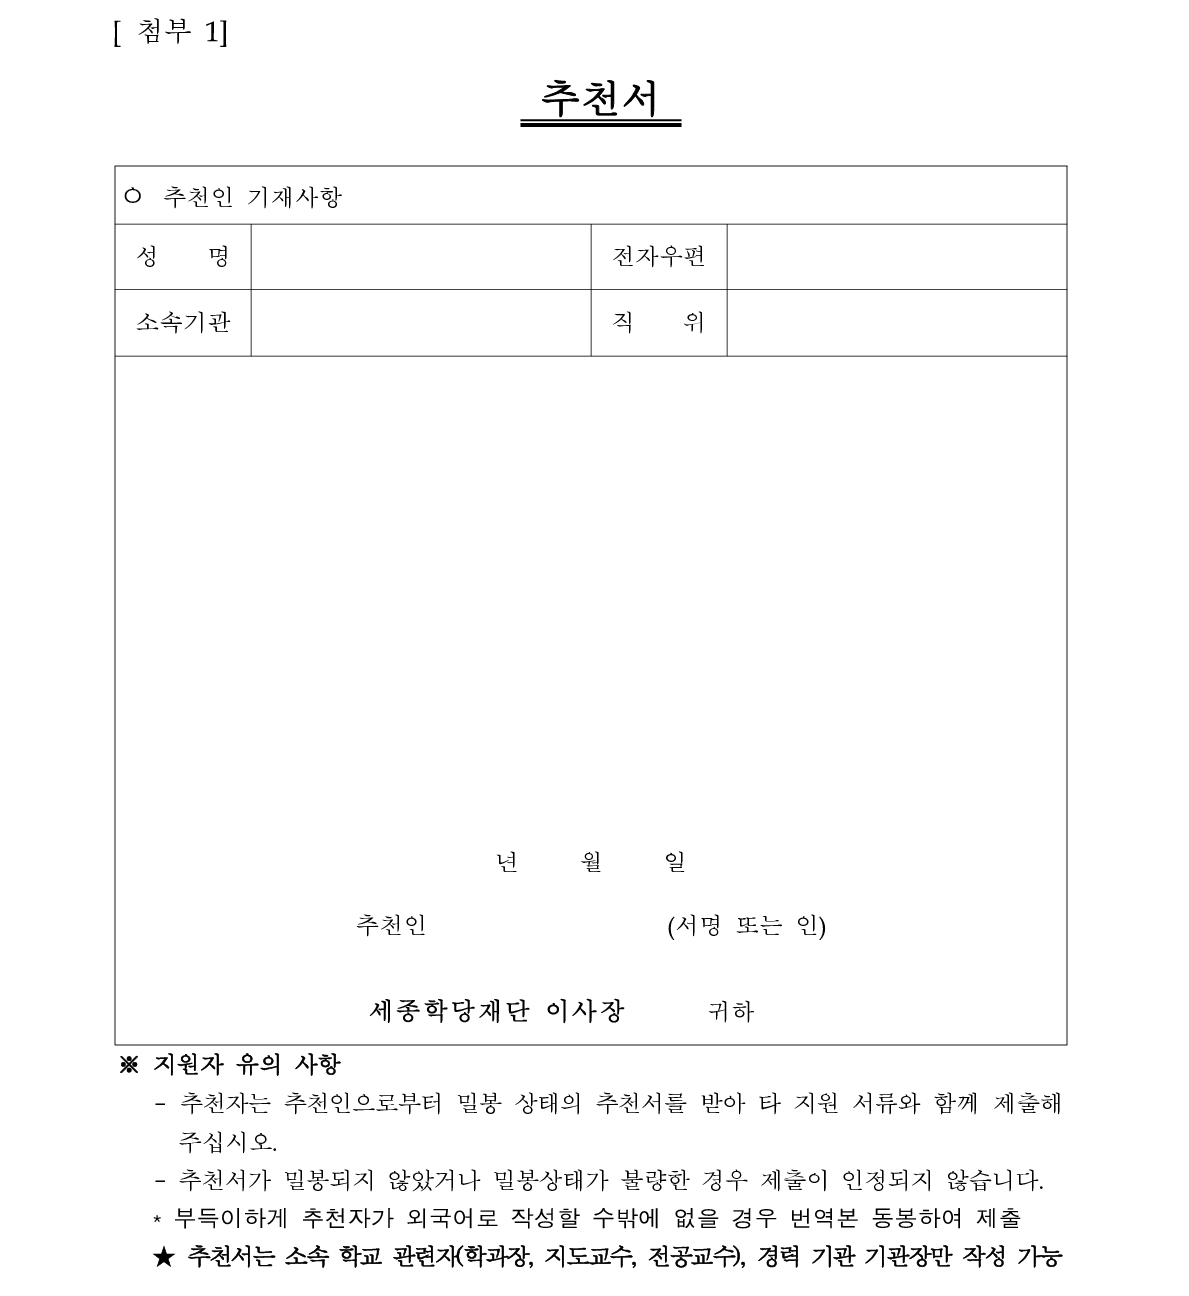 2019년 세종학당 해외 파견 한국어 교원 선발 공고_10